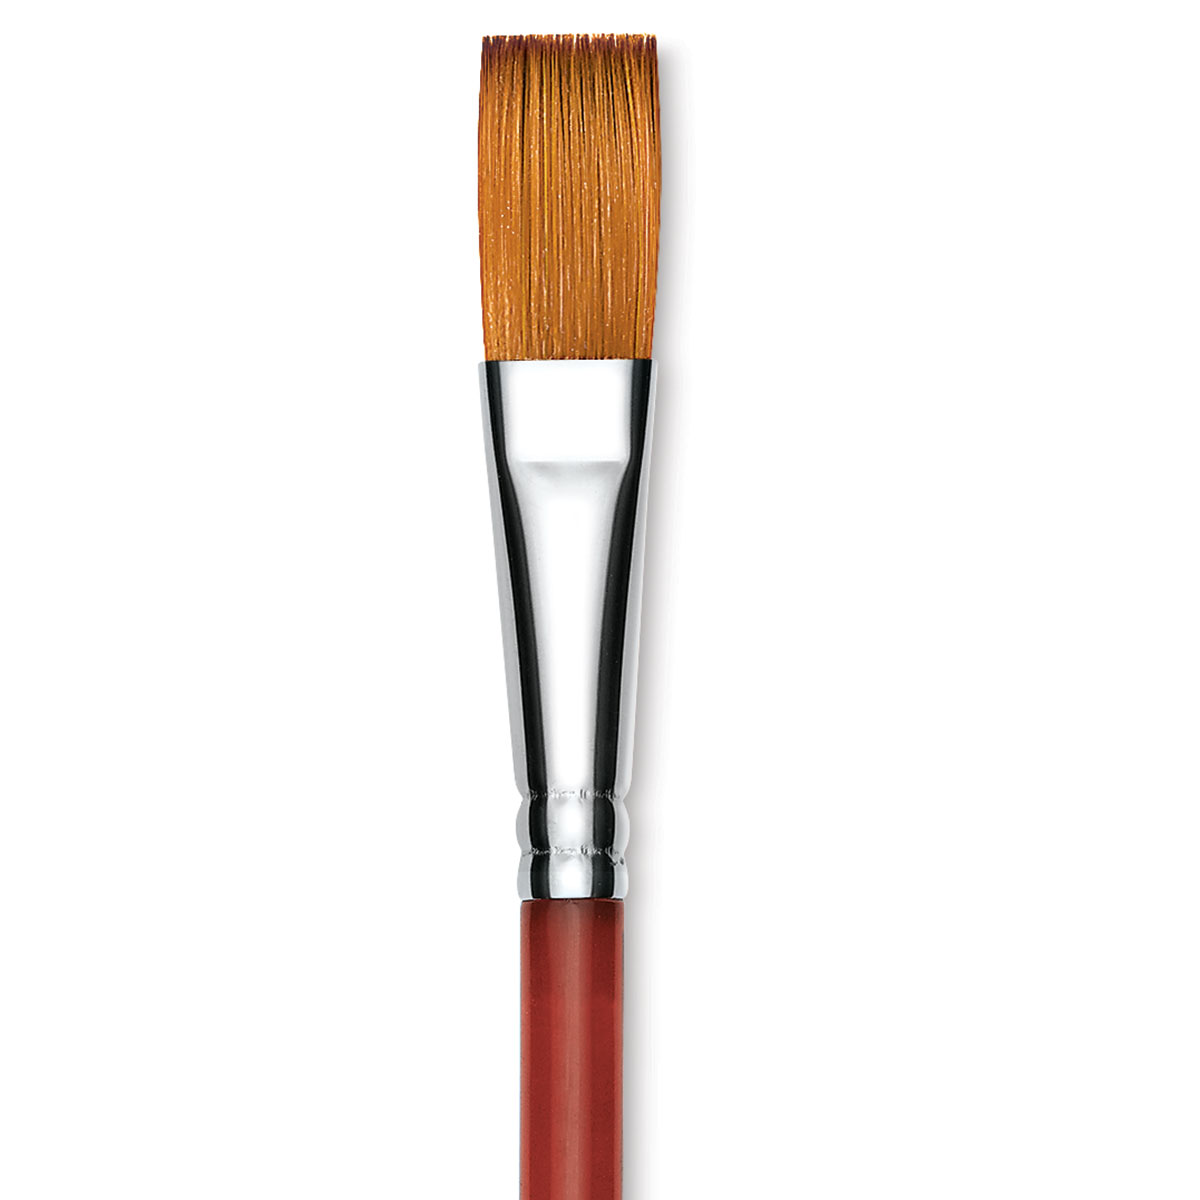 Princeton Velvetouch Series 3950 Synthetic Brush - Chisel Blender, Size 6